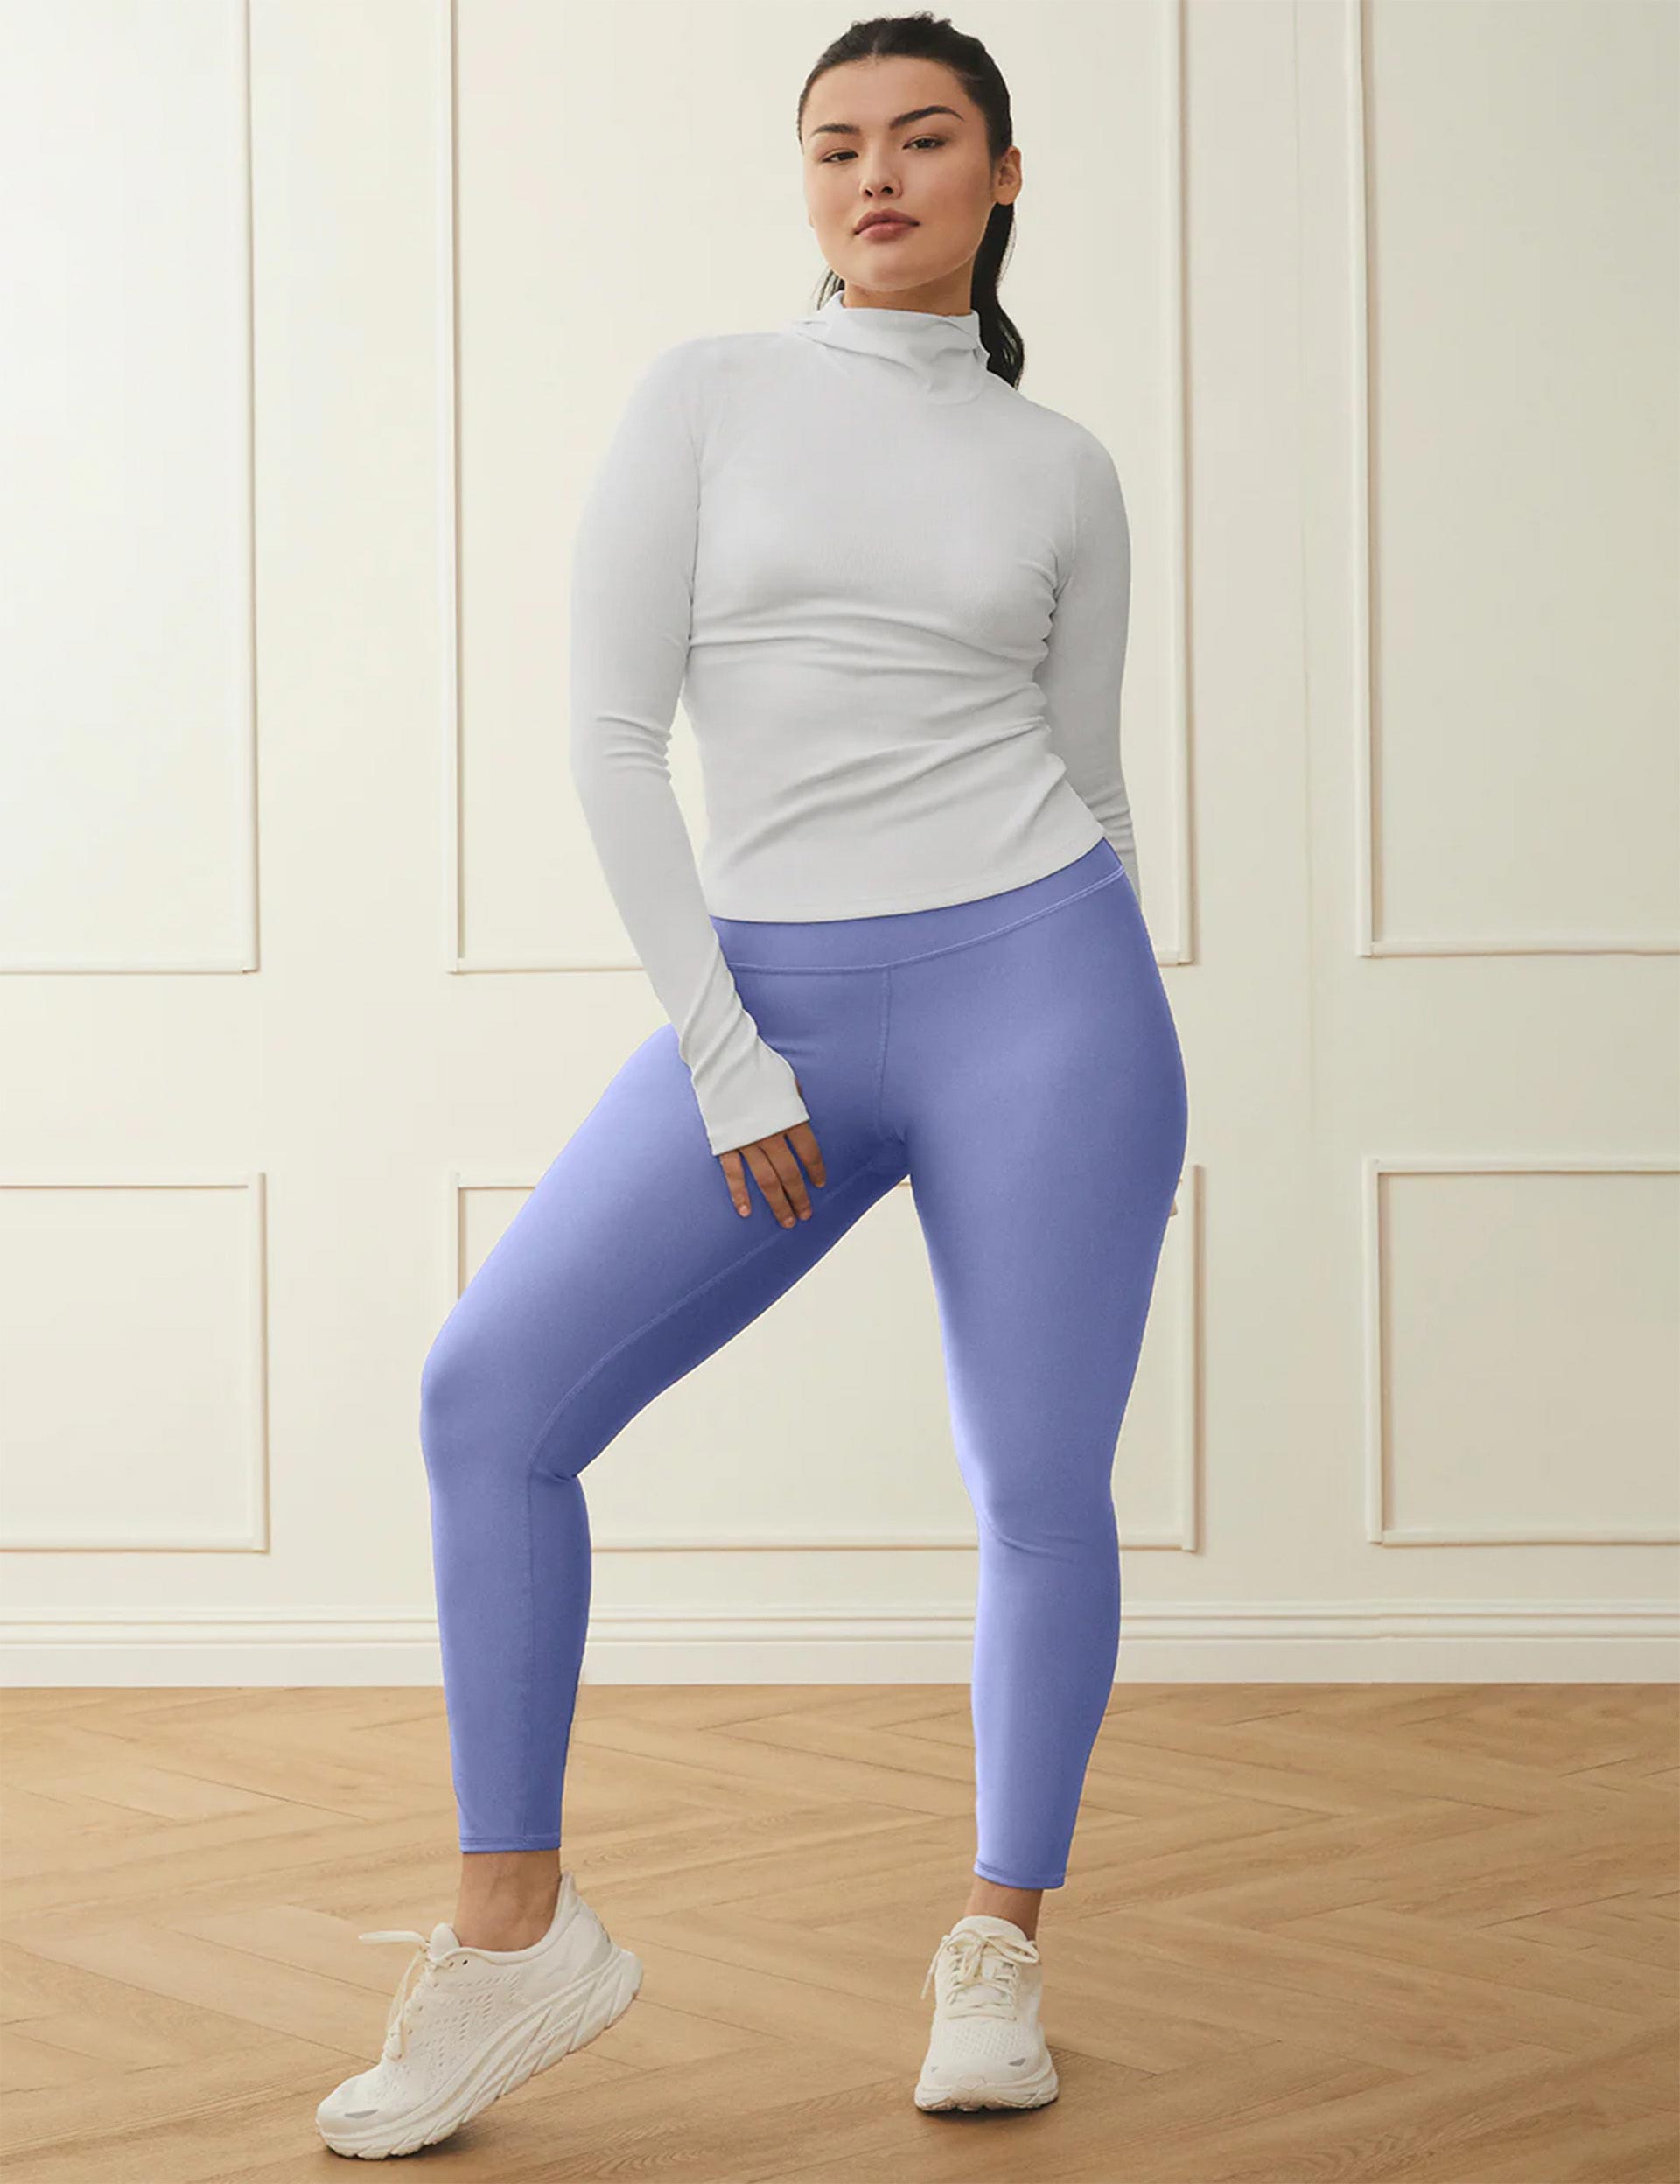 High-Waisted 7/8-Length Balance Yoga Leggings for Women